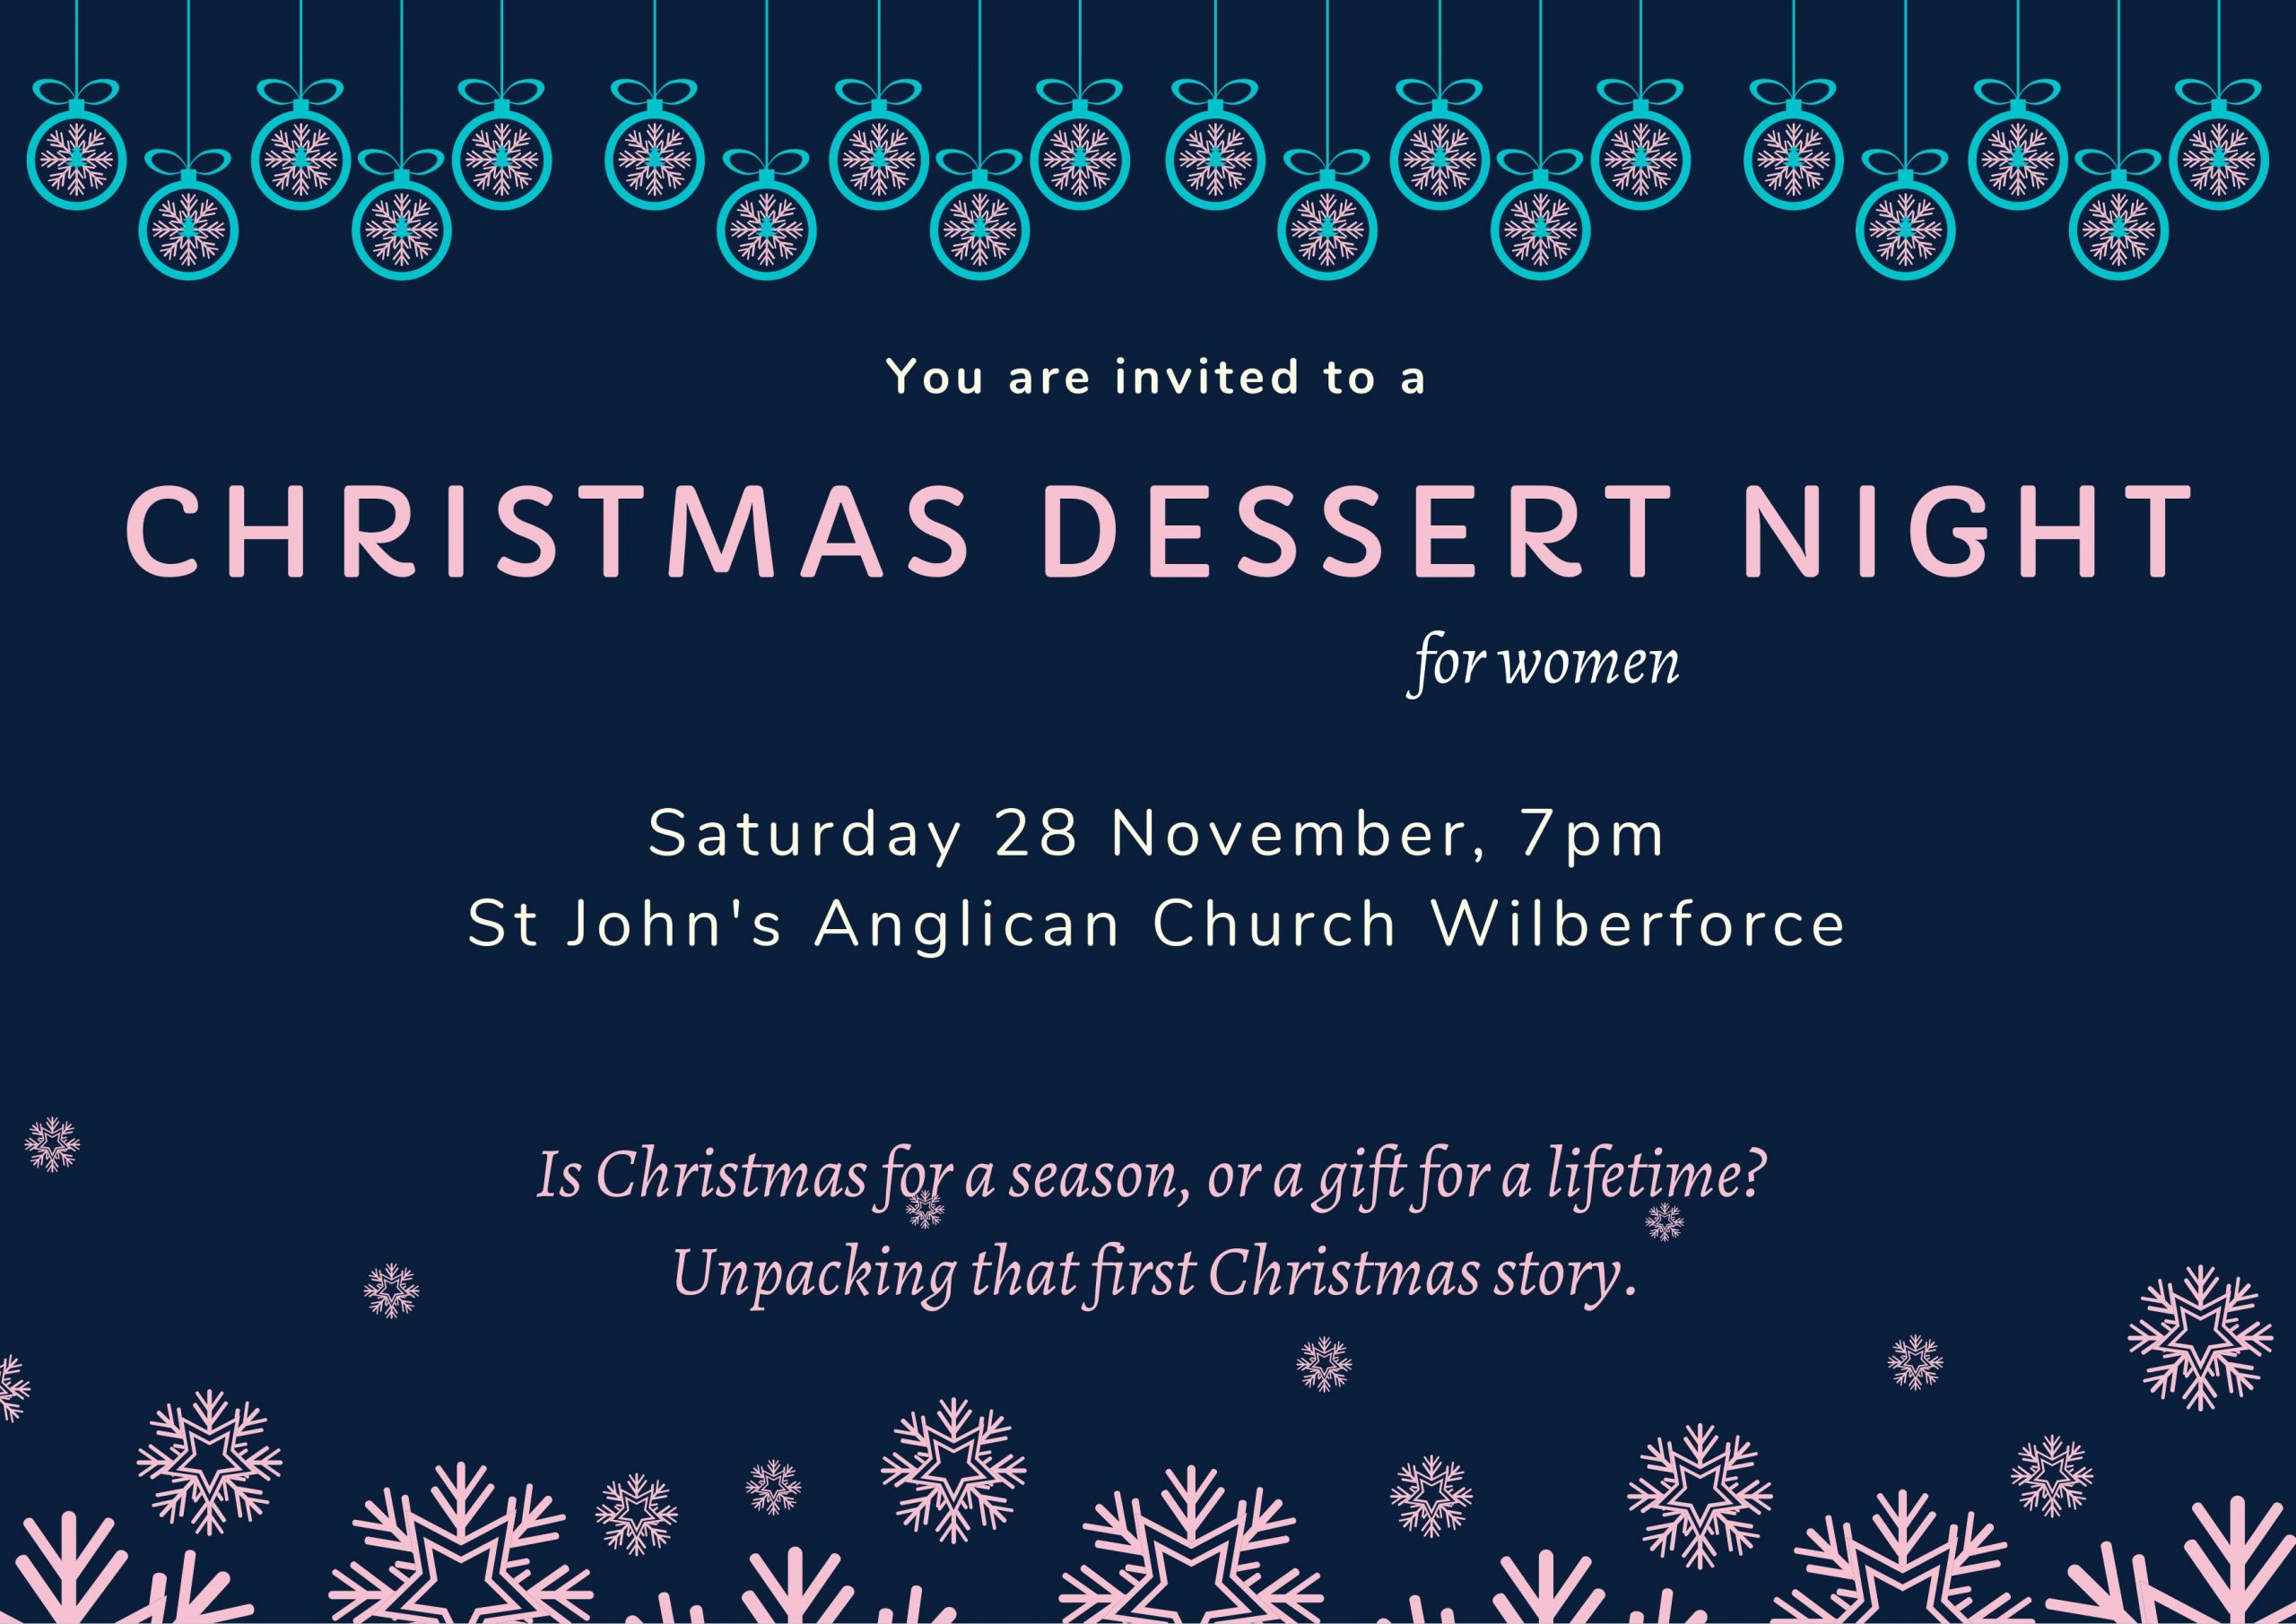 Women's Christmas Dessert Night Flyer - 28 November 2020